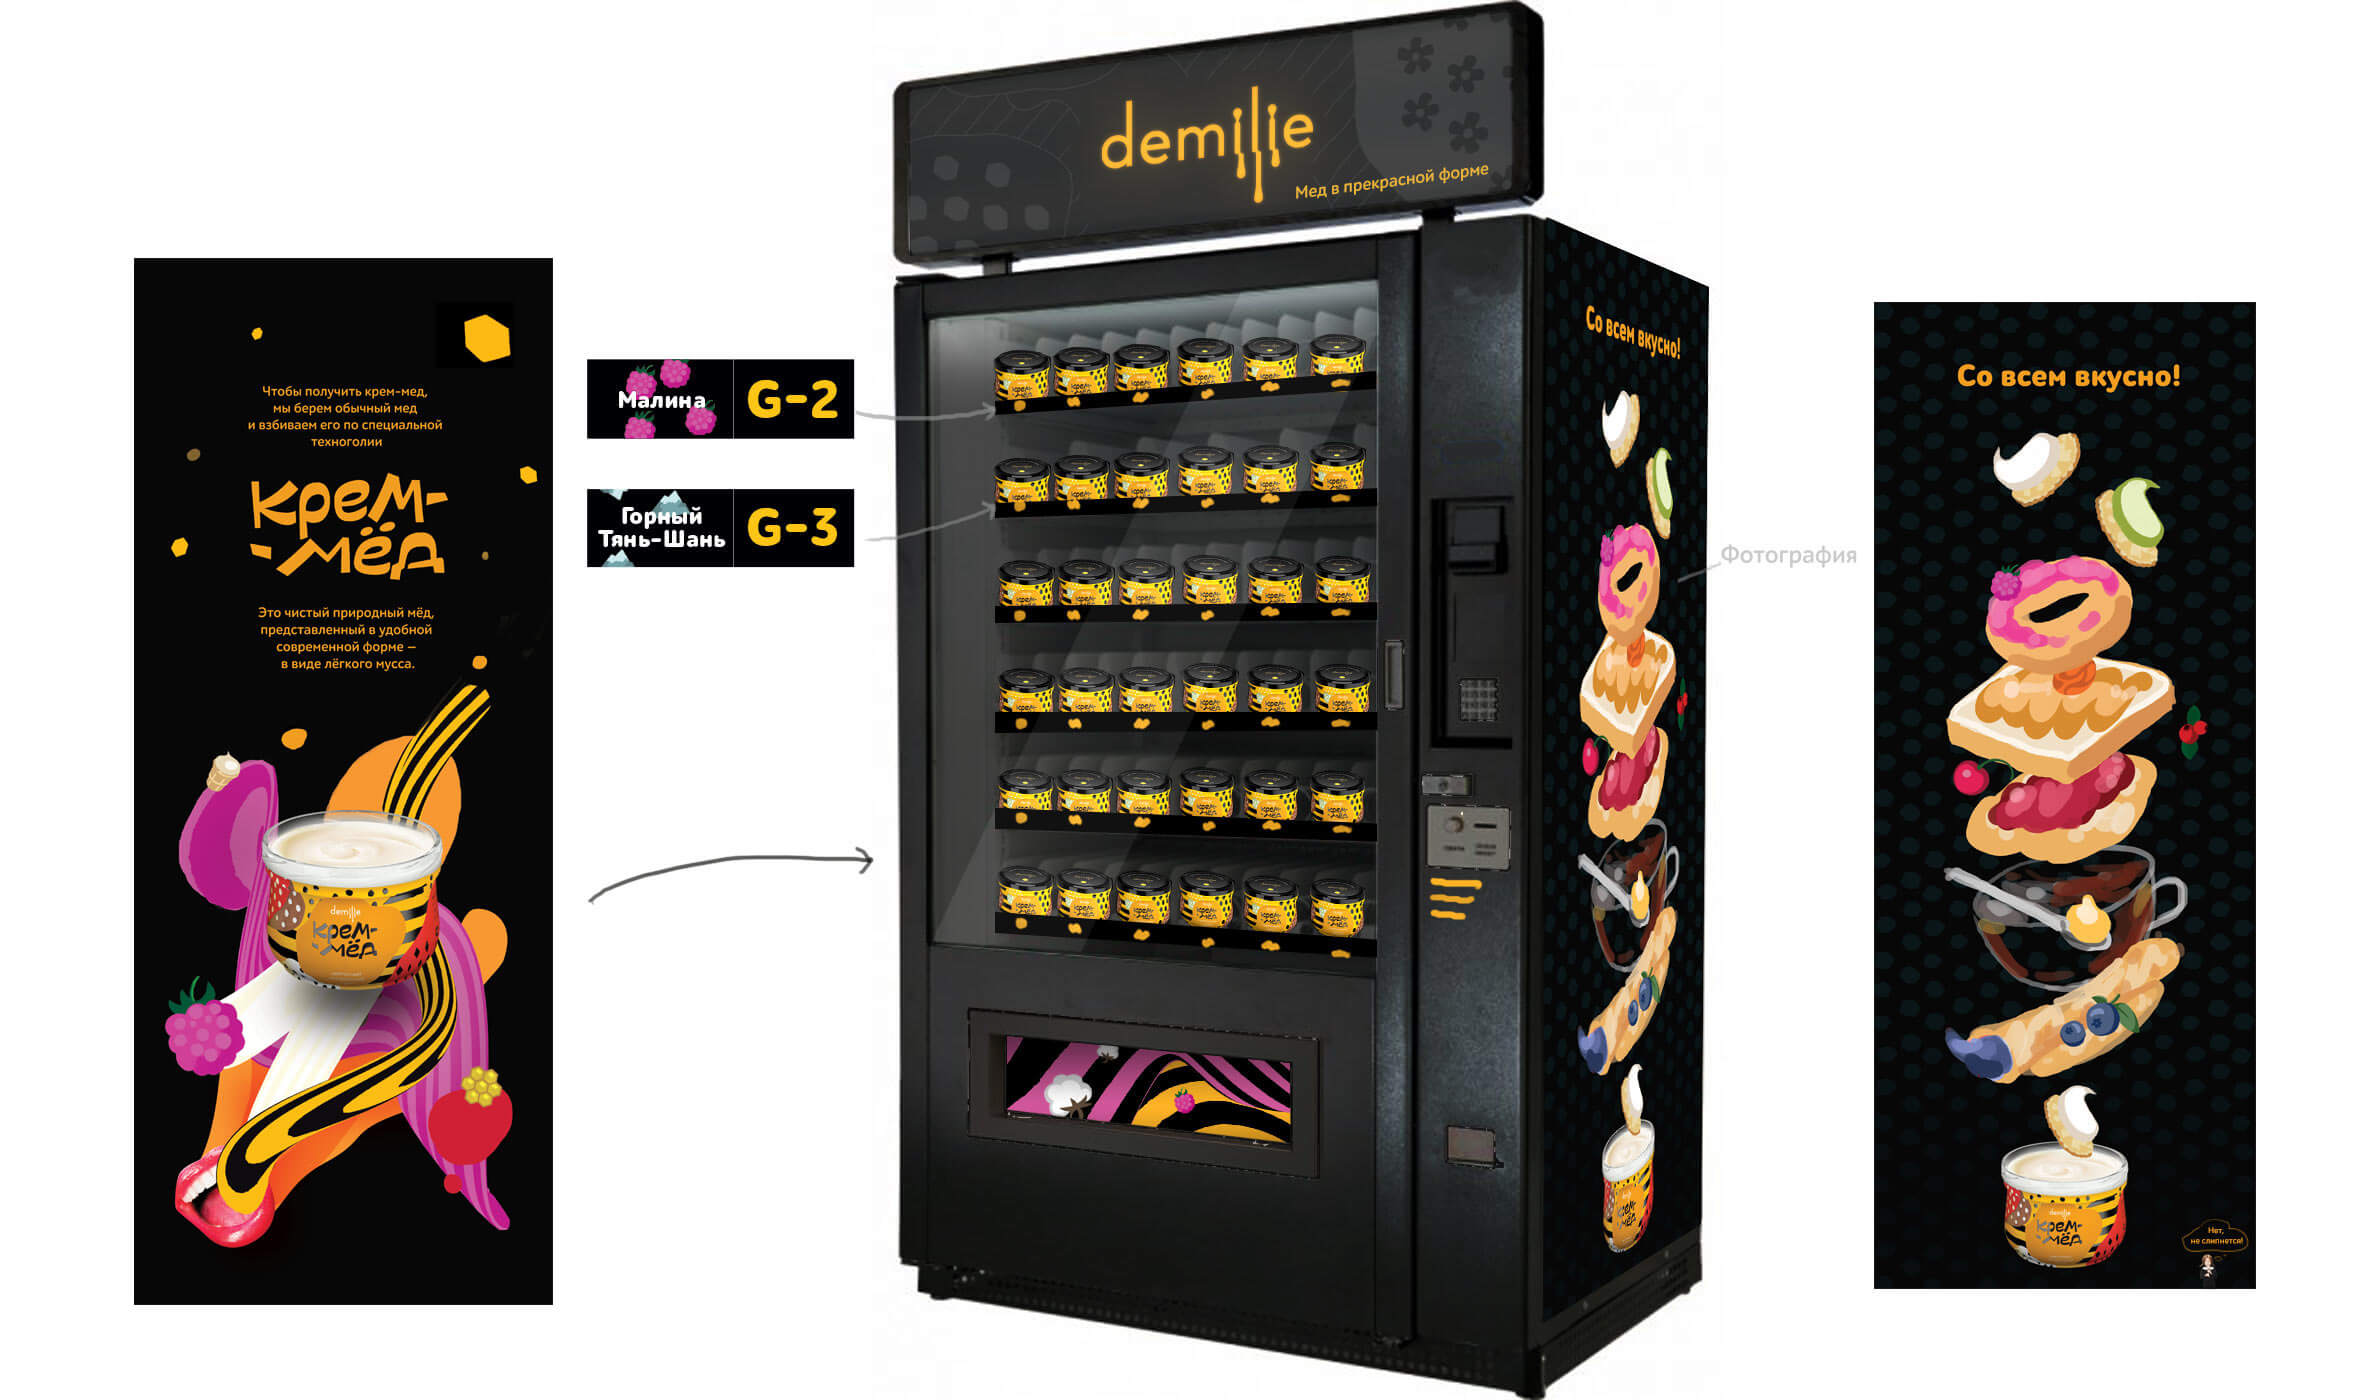 demilie vending process 03